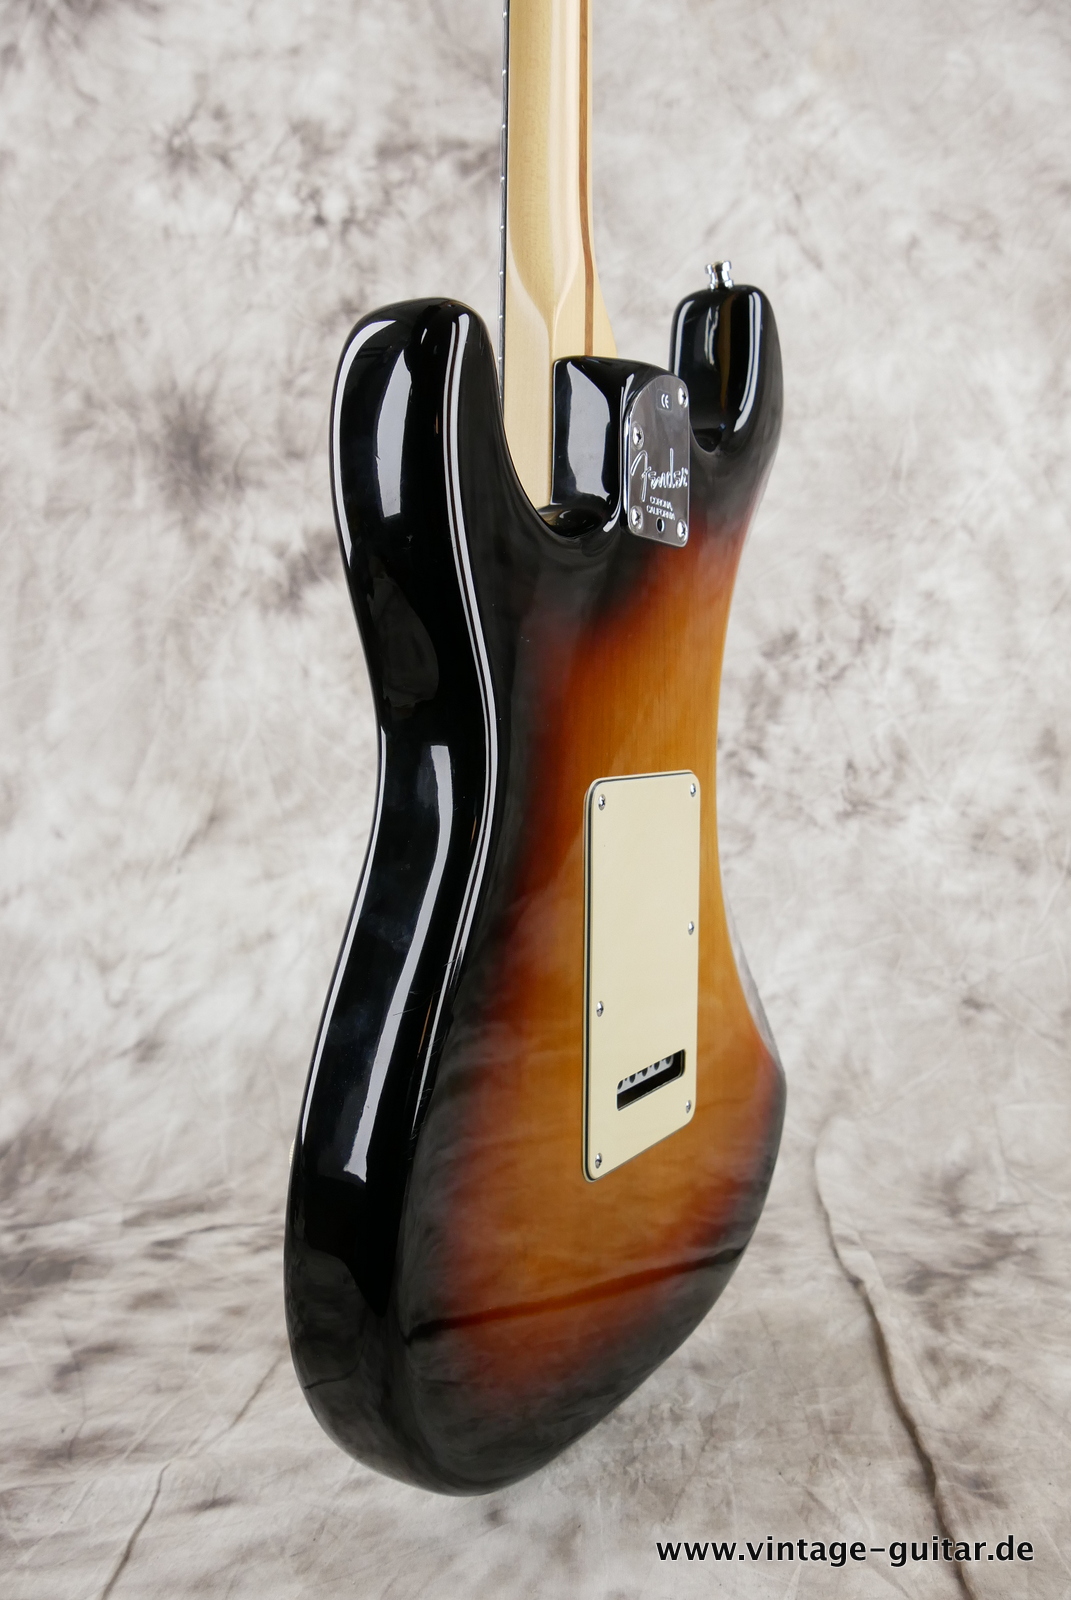 img/vintage/5280/Fender_Startocaster_American_Deluxe_sunburst_samarium-cobalt-noiseless_tremolo_2005-011.JPG